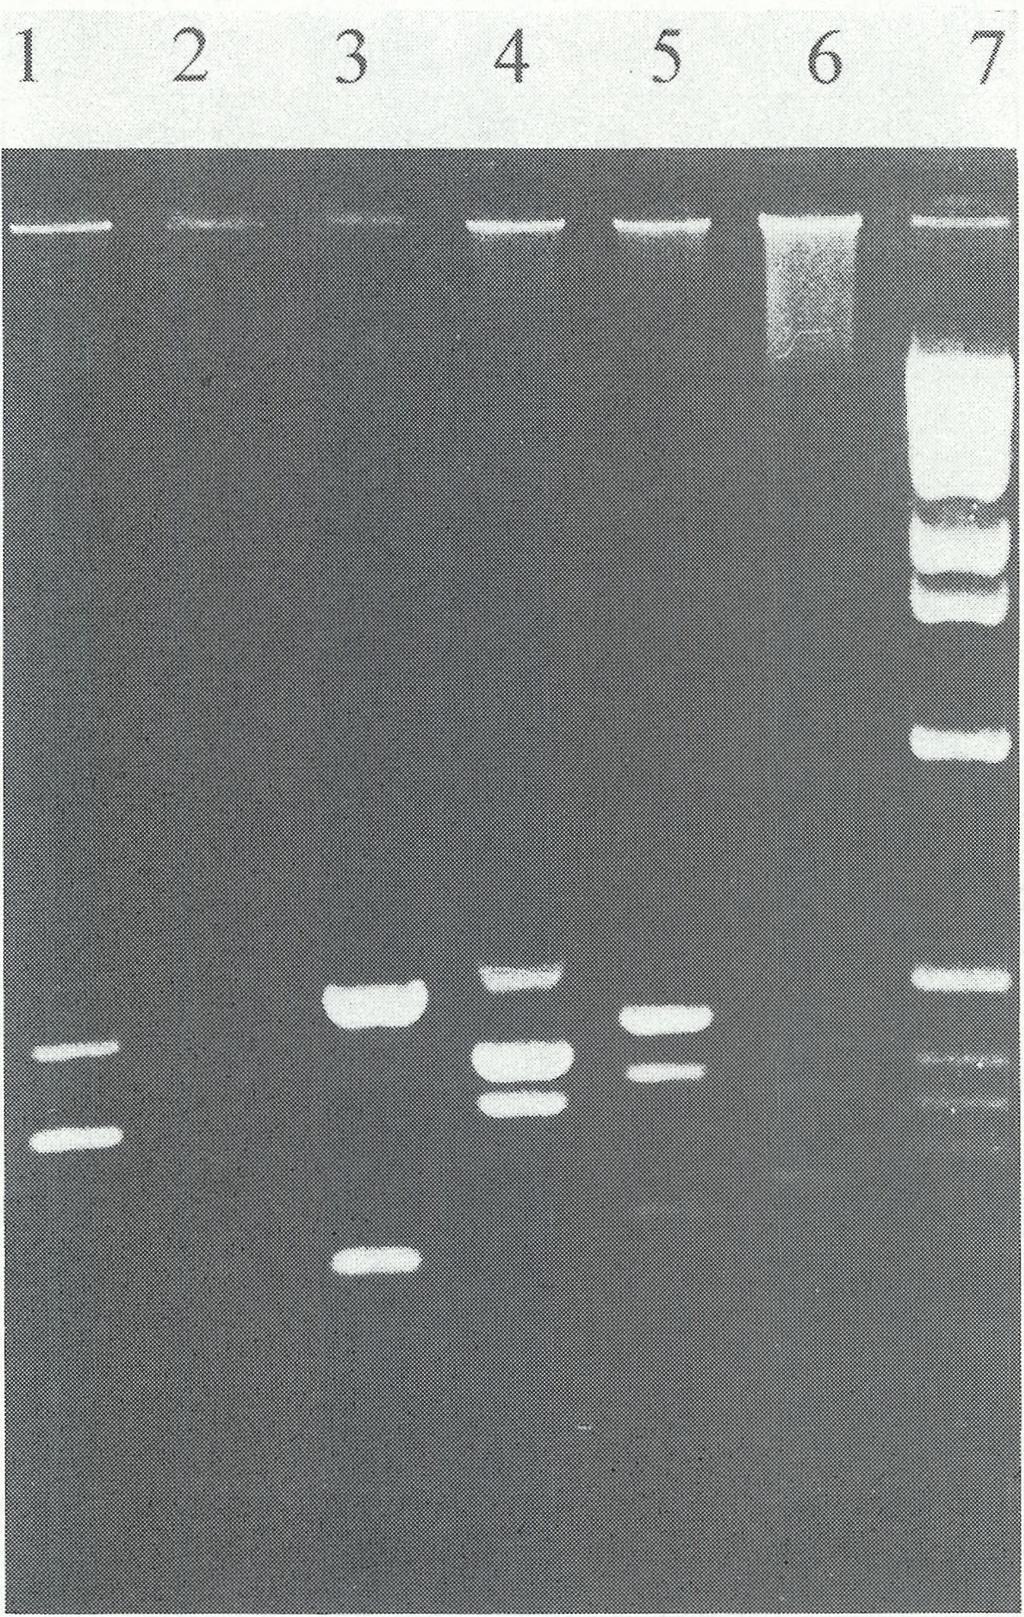 6 (202 pz), 46 (140pz); tor 4 produkty PCR zawierające eksony: 45 (547 pz), 17 (416 pz), 43 (357 pz); tor 5 produkty PCR zawierające eksony: 19 (459 pz), 51 (388 pz), 13 (238 pz), 47 (181 pz); tor 6